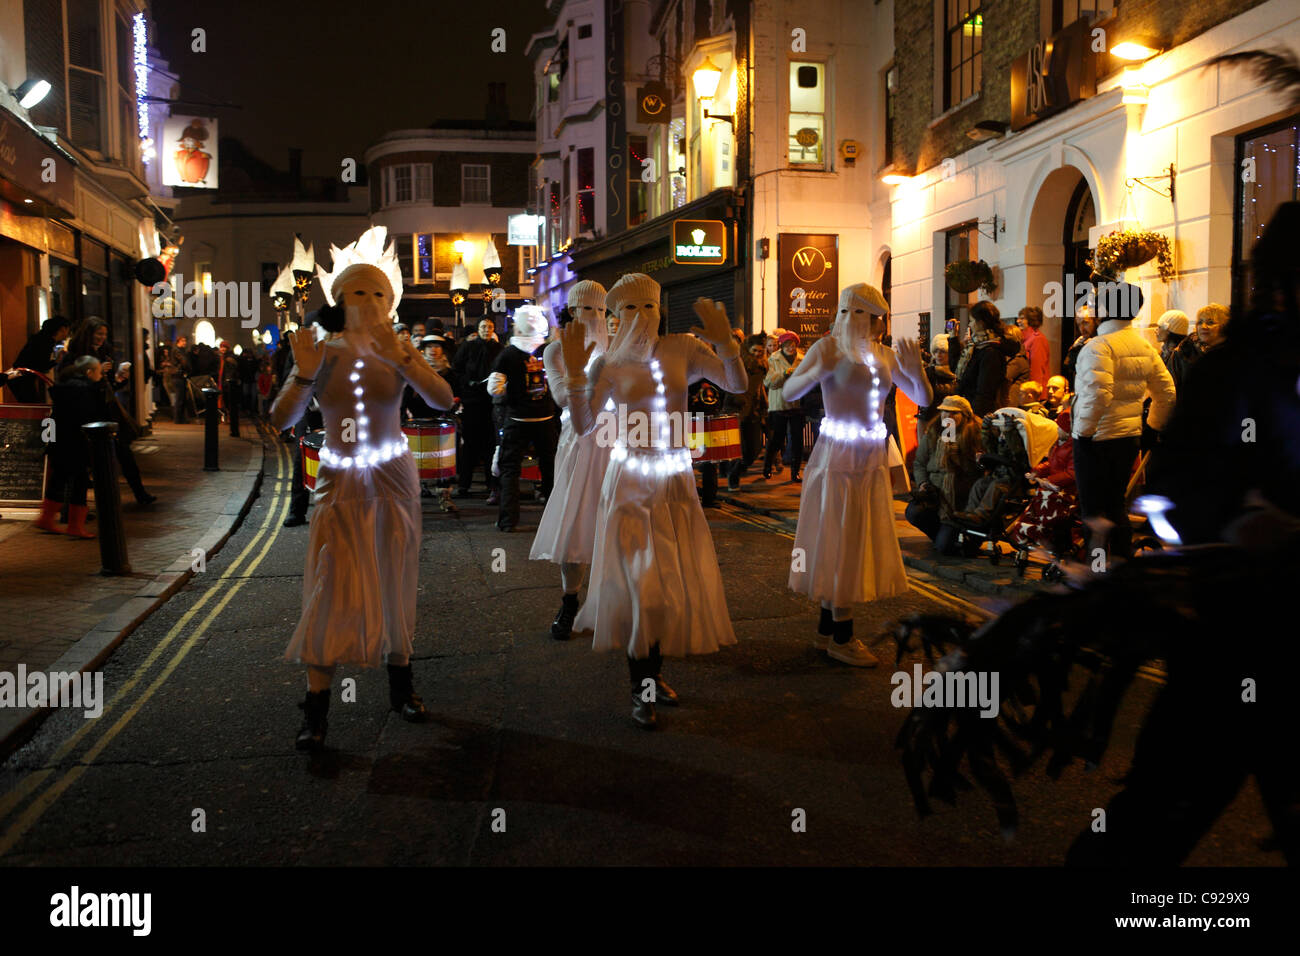 Les danseurs de la parade. Le solstice d'hiver annuel excentrique, festival Burning The Clocks, à Brighton, East Sussex, Angleterre Banque D'Images